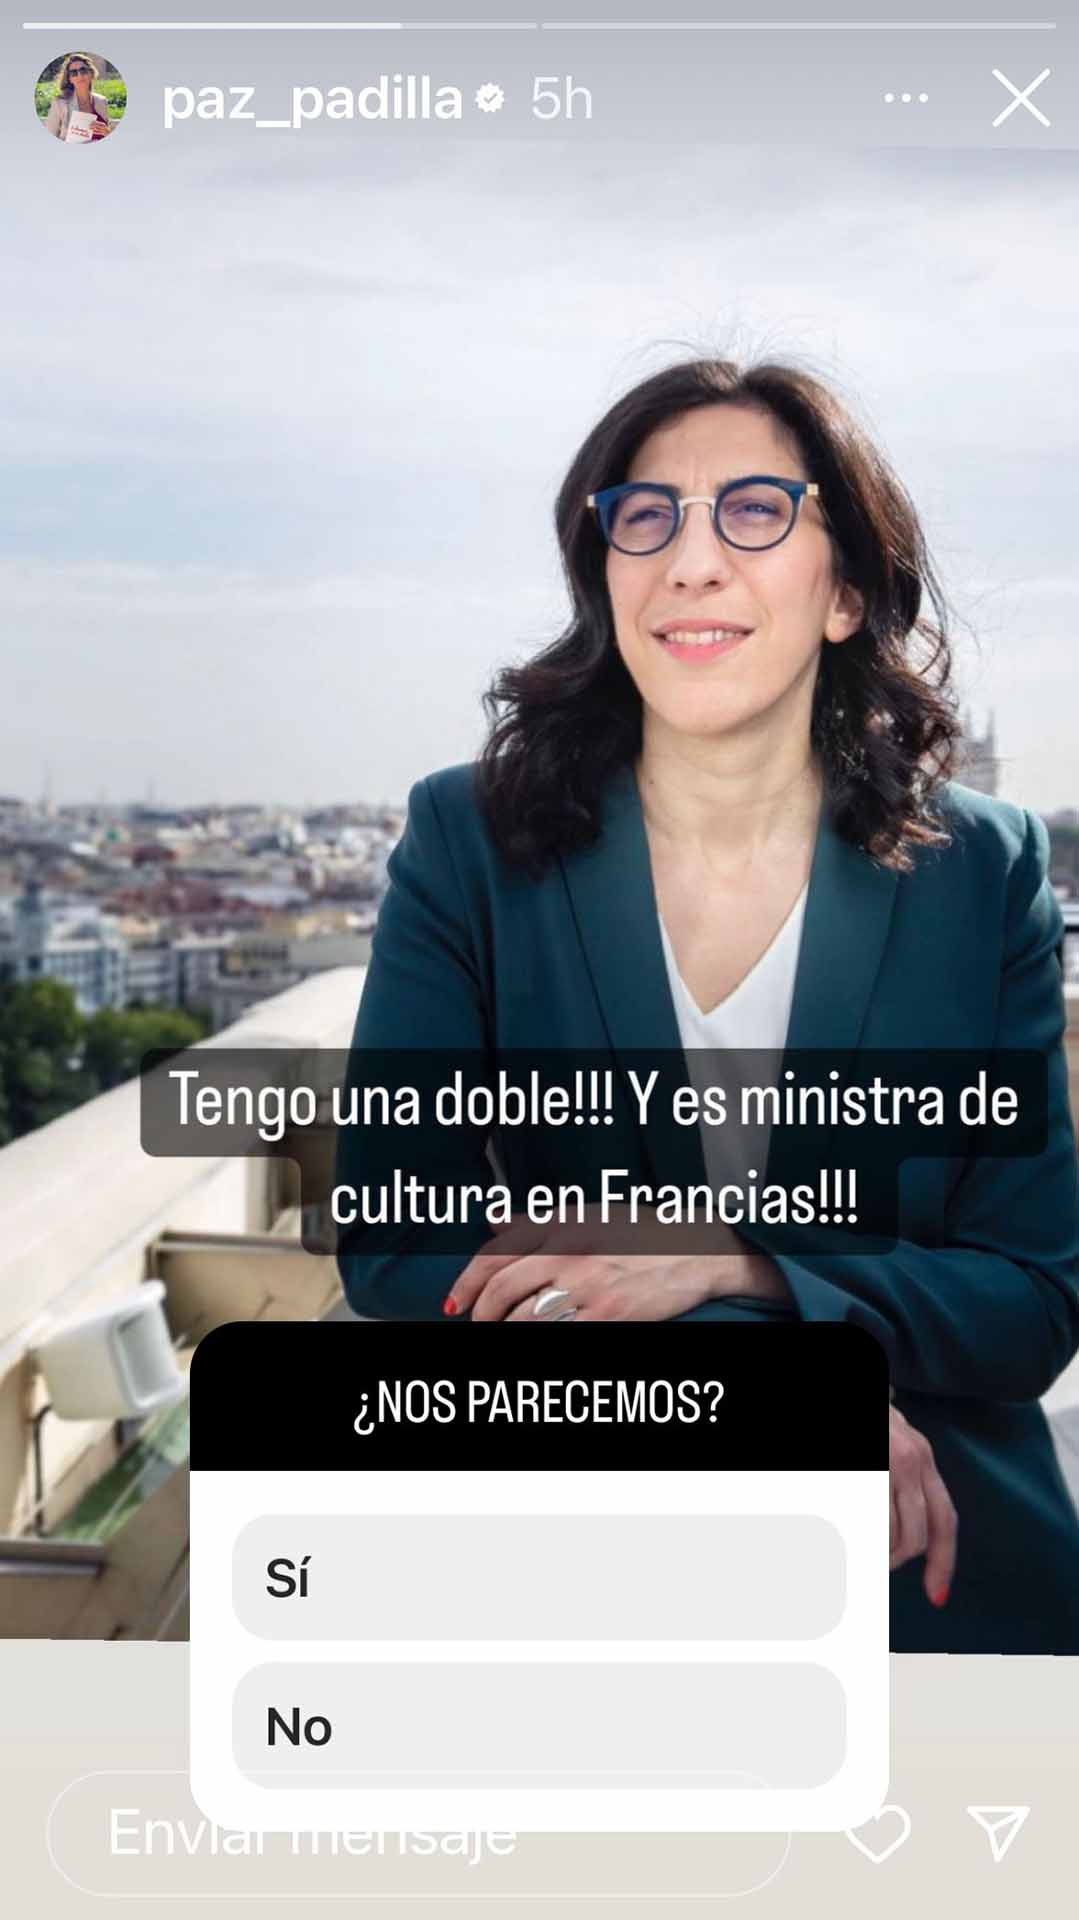 El sorprendente parecido de Paz Padilla con la Ministra de Cultura de Francia